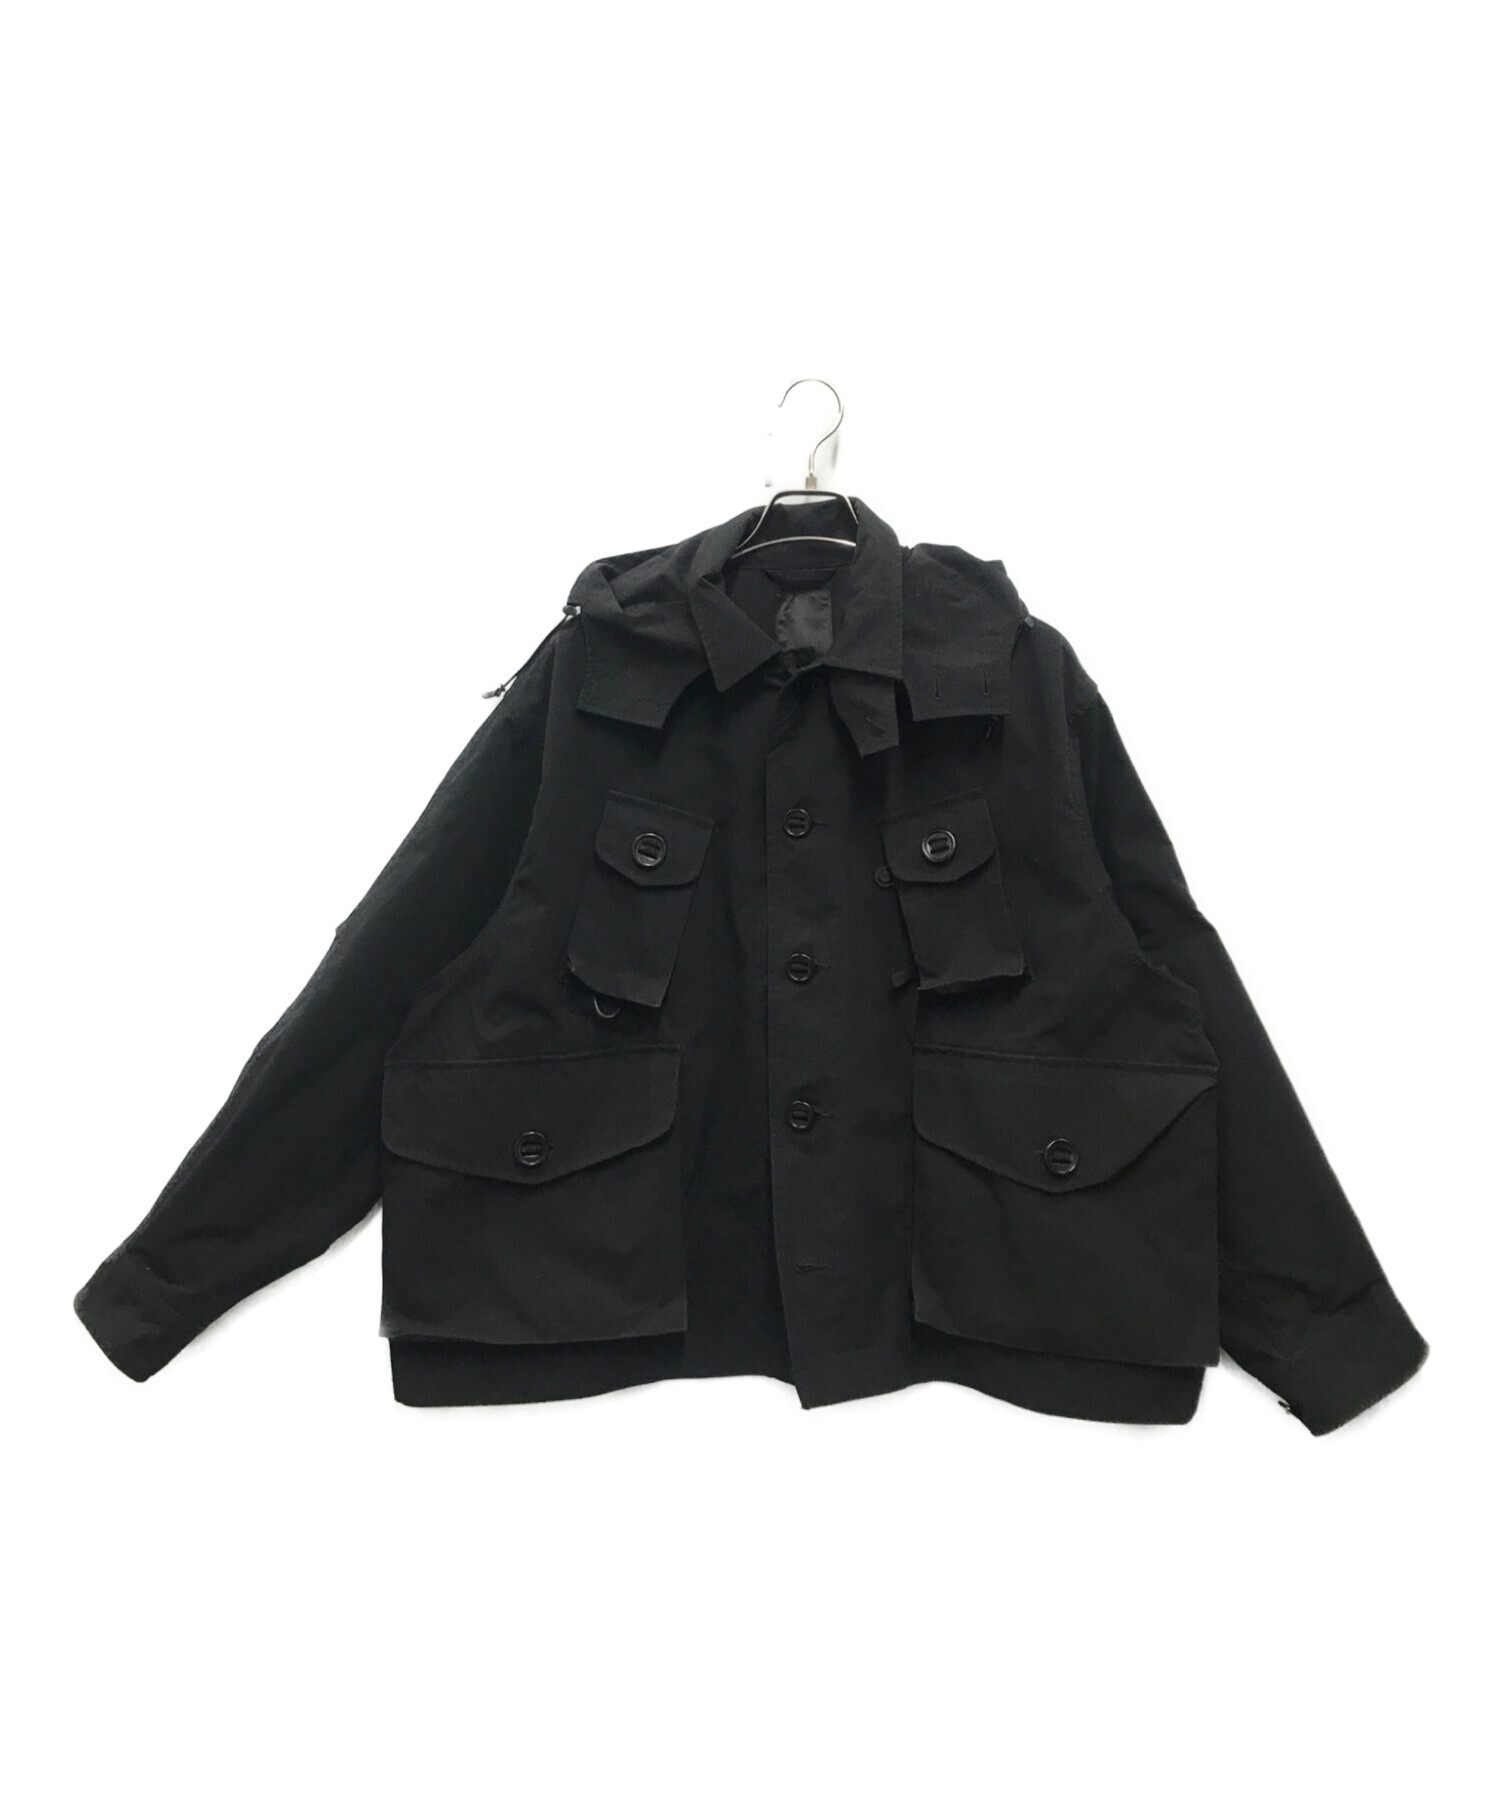 DAIWA PIER39 (ダイワ ピア39) テック カナディアン ファティーグ ジャケット ブラック サイズ:M